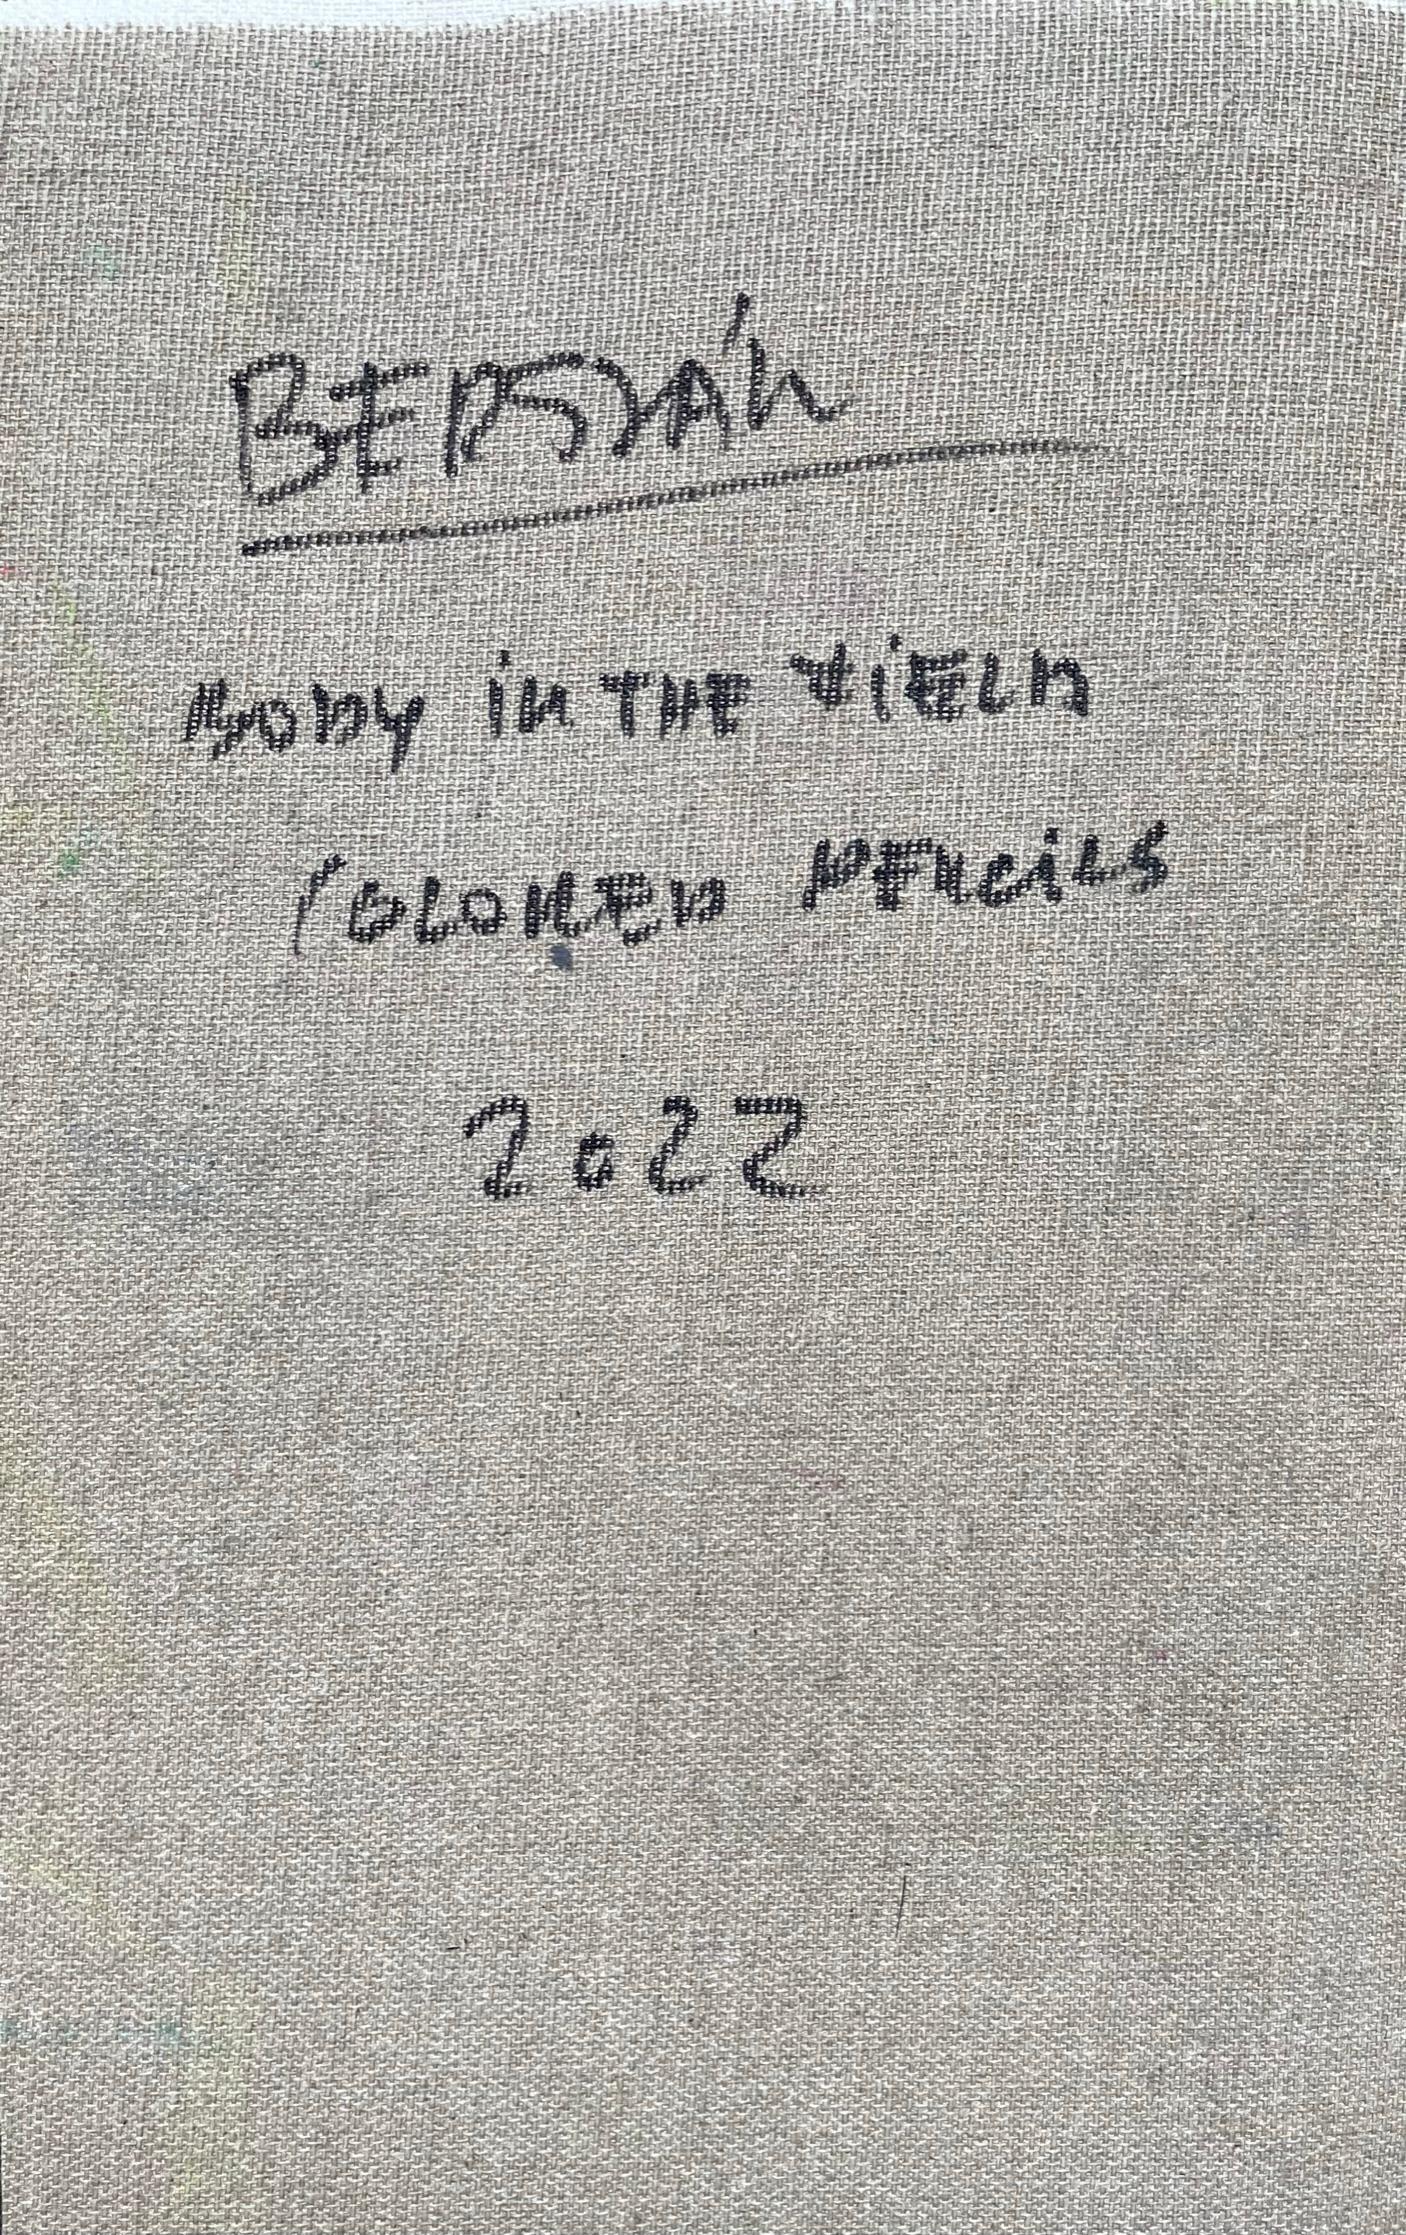 Leiche auf dem Feld #5, 2022
Buntstifte auf Leinwand

25 H x 16 B cm

Signiert auf der Rückseite

Zsolt Berszán verkörpert in seinen Werken die Auflösung des menschlichen Körpers durch das Prisma des Fragments, des zerteilten Körpers und des